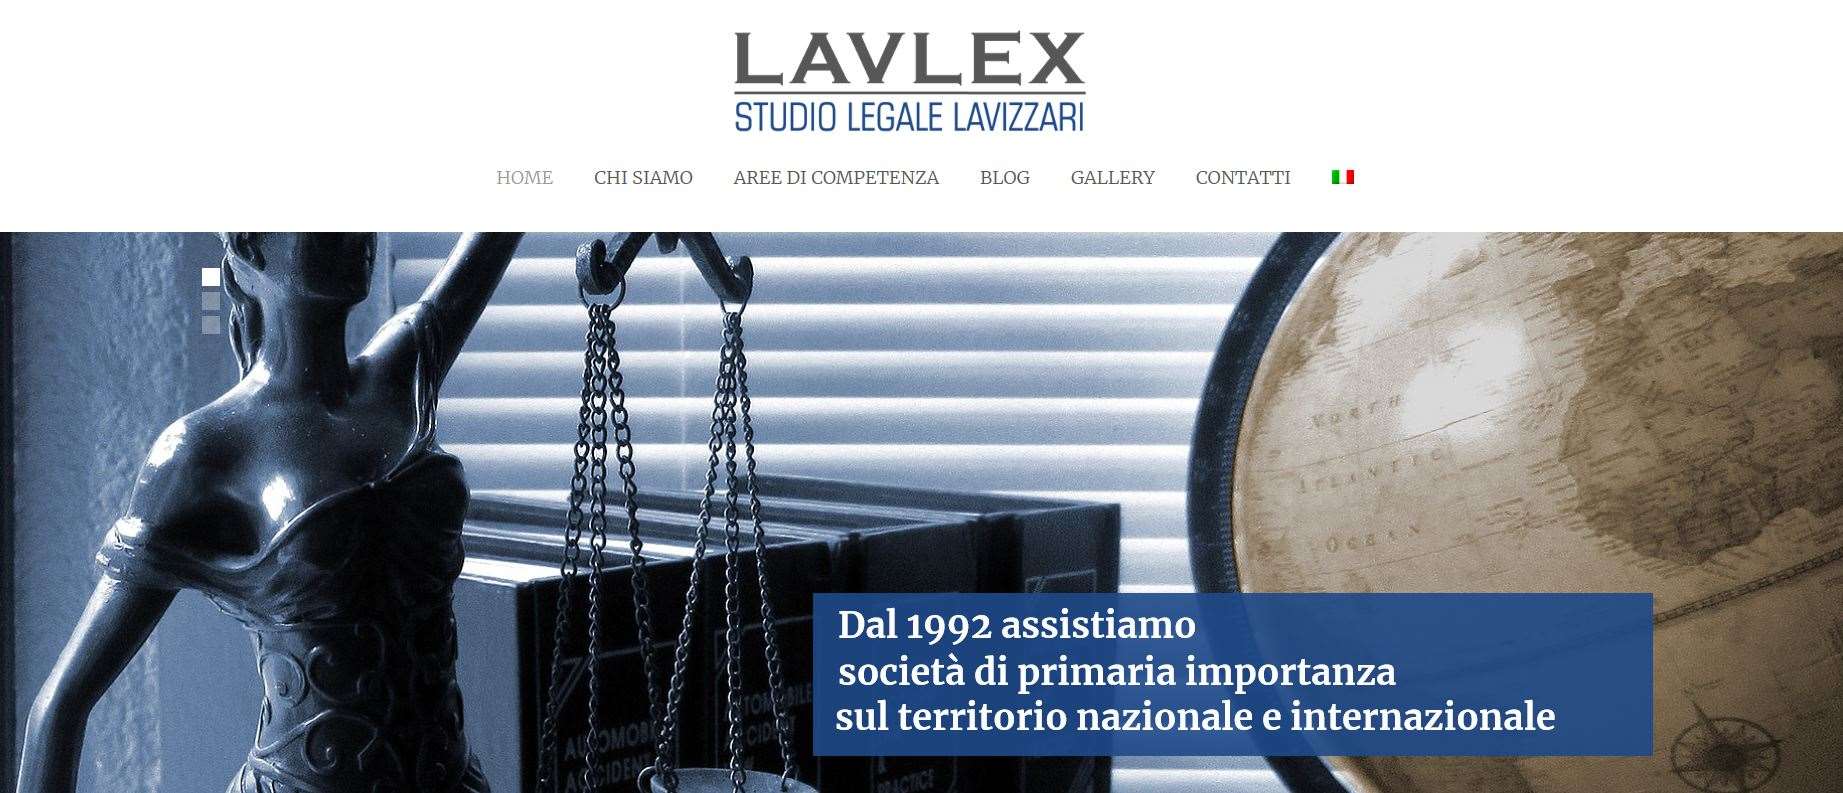 Lavlex Studio Legale Lavizzari Portfolio Clienti Digital Compass